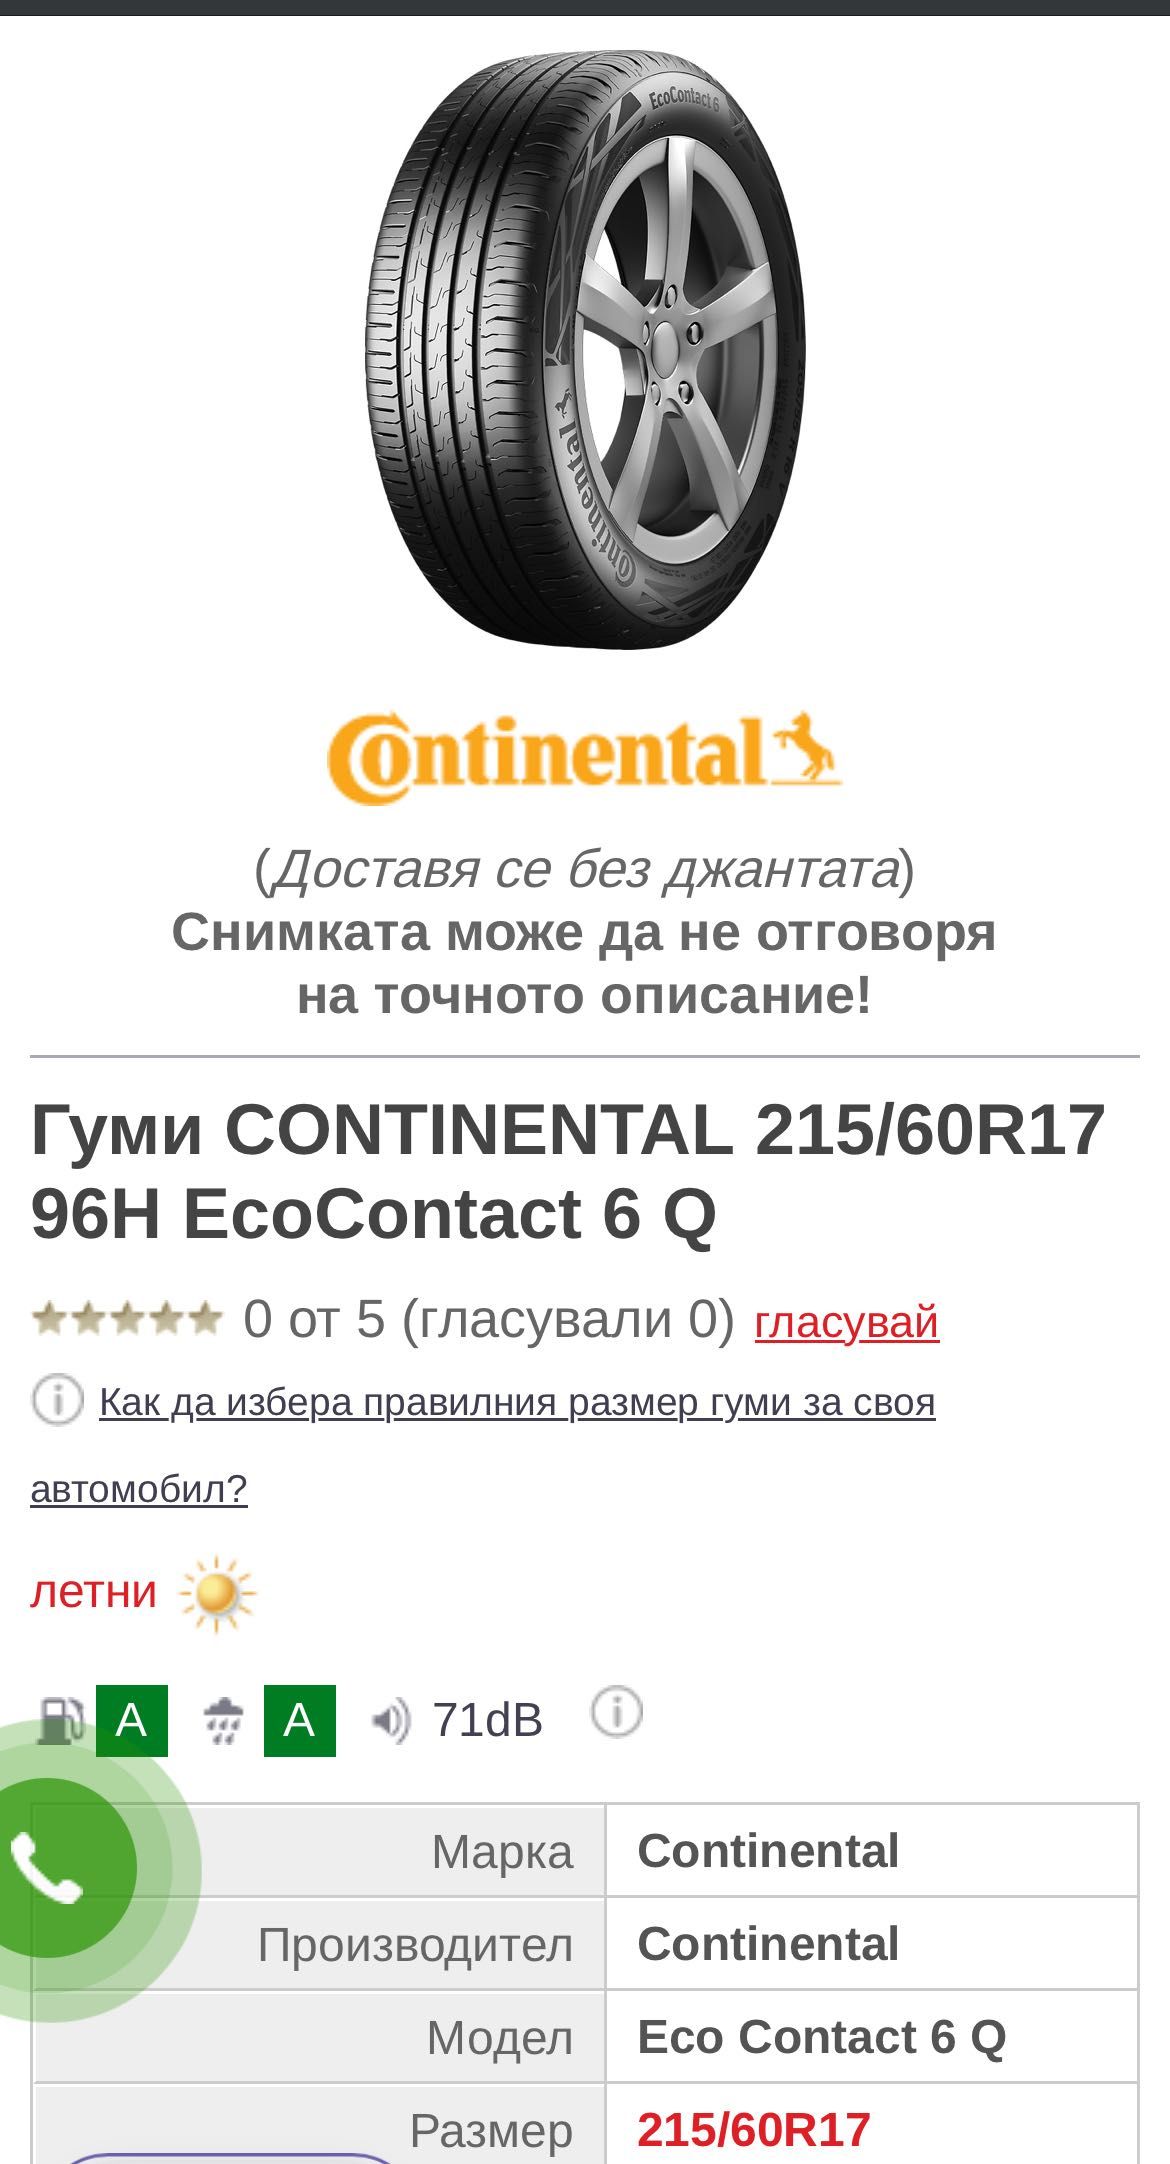 Continental EcoContact 6Q 215/60R17